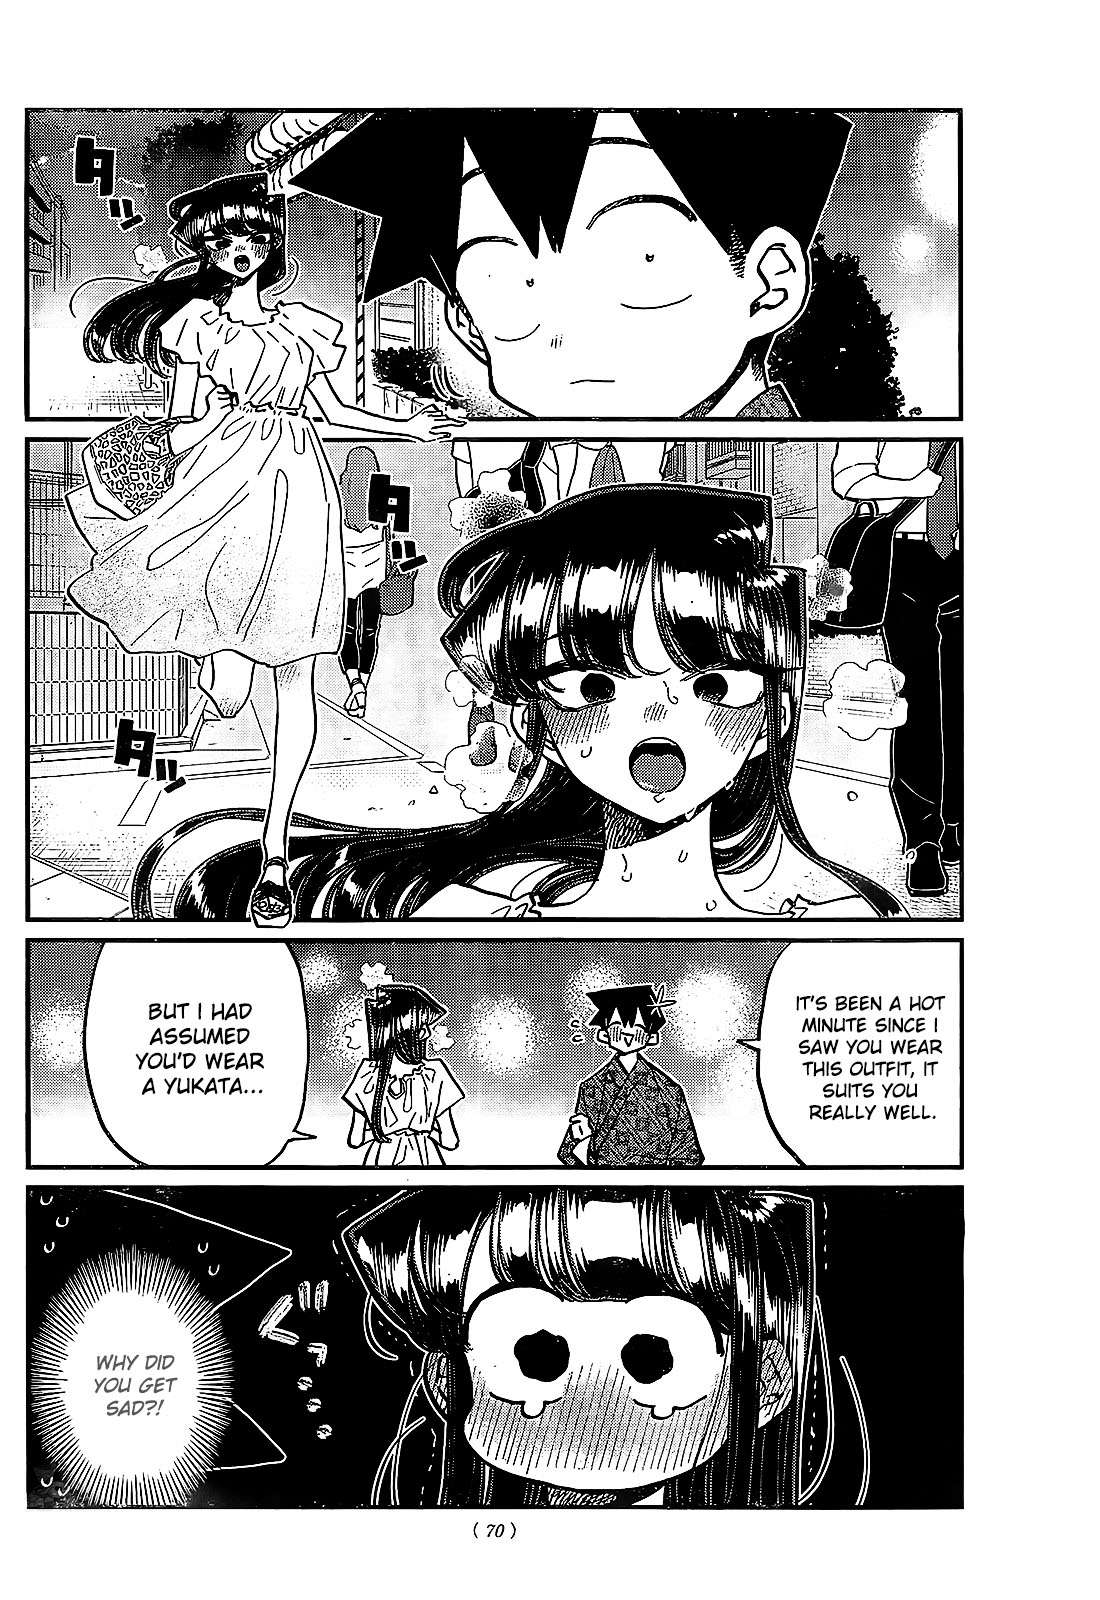 Komi-san wa Komyushou Desu chapter 411 page 4